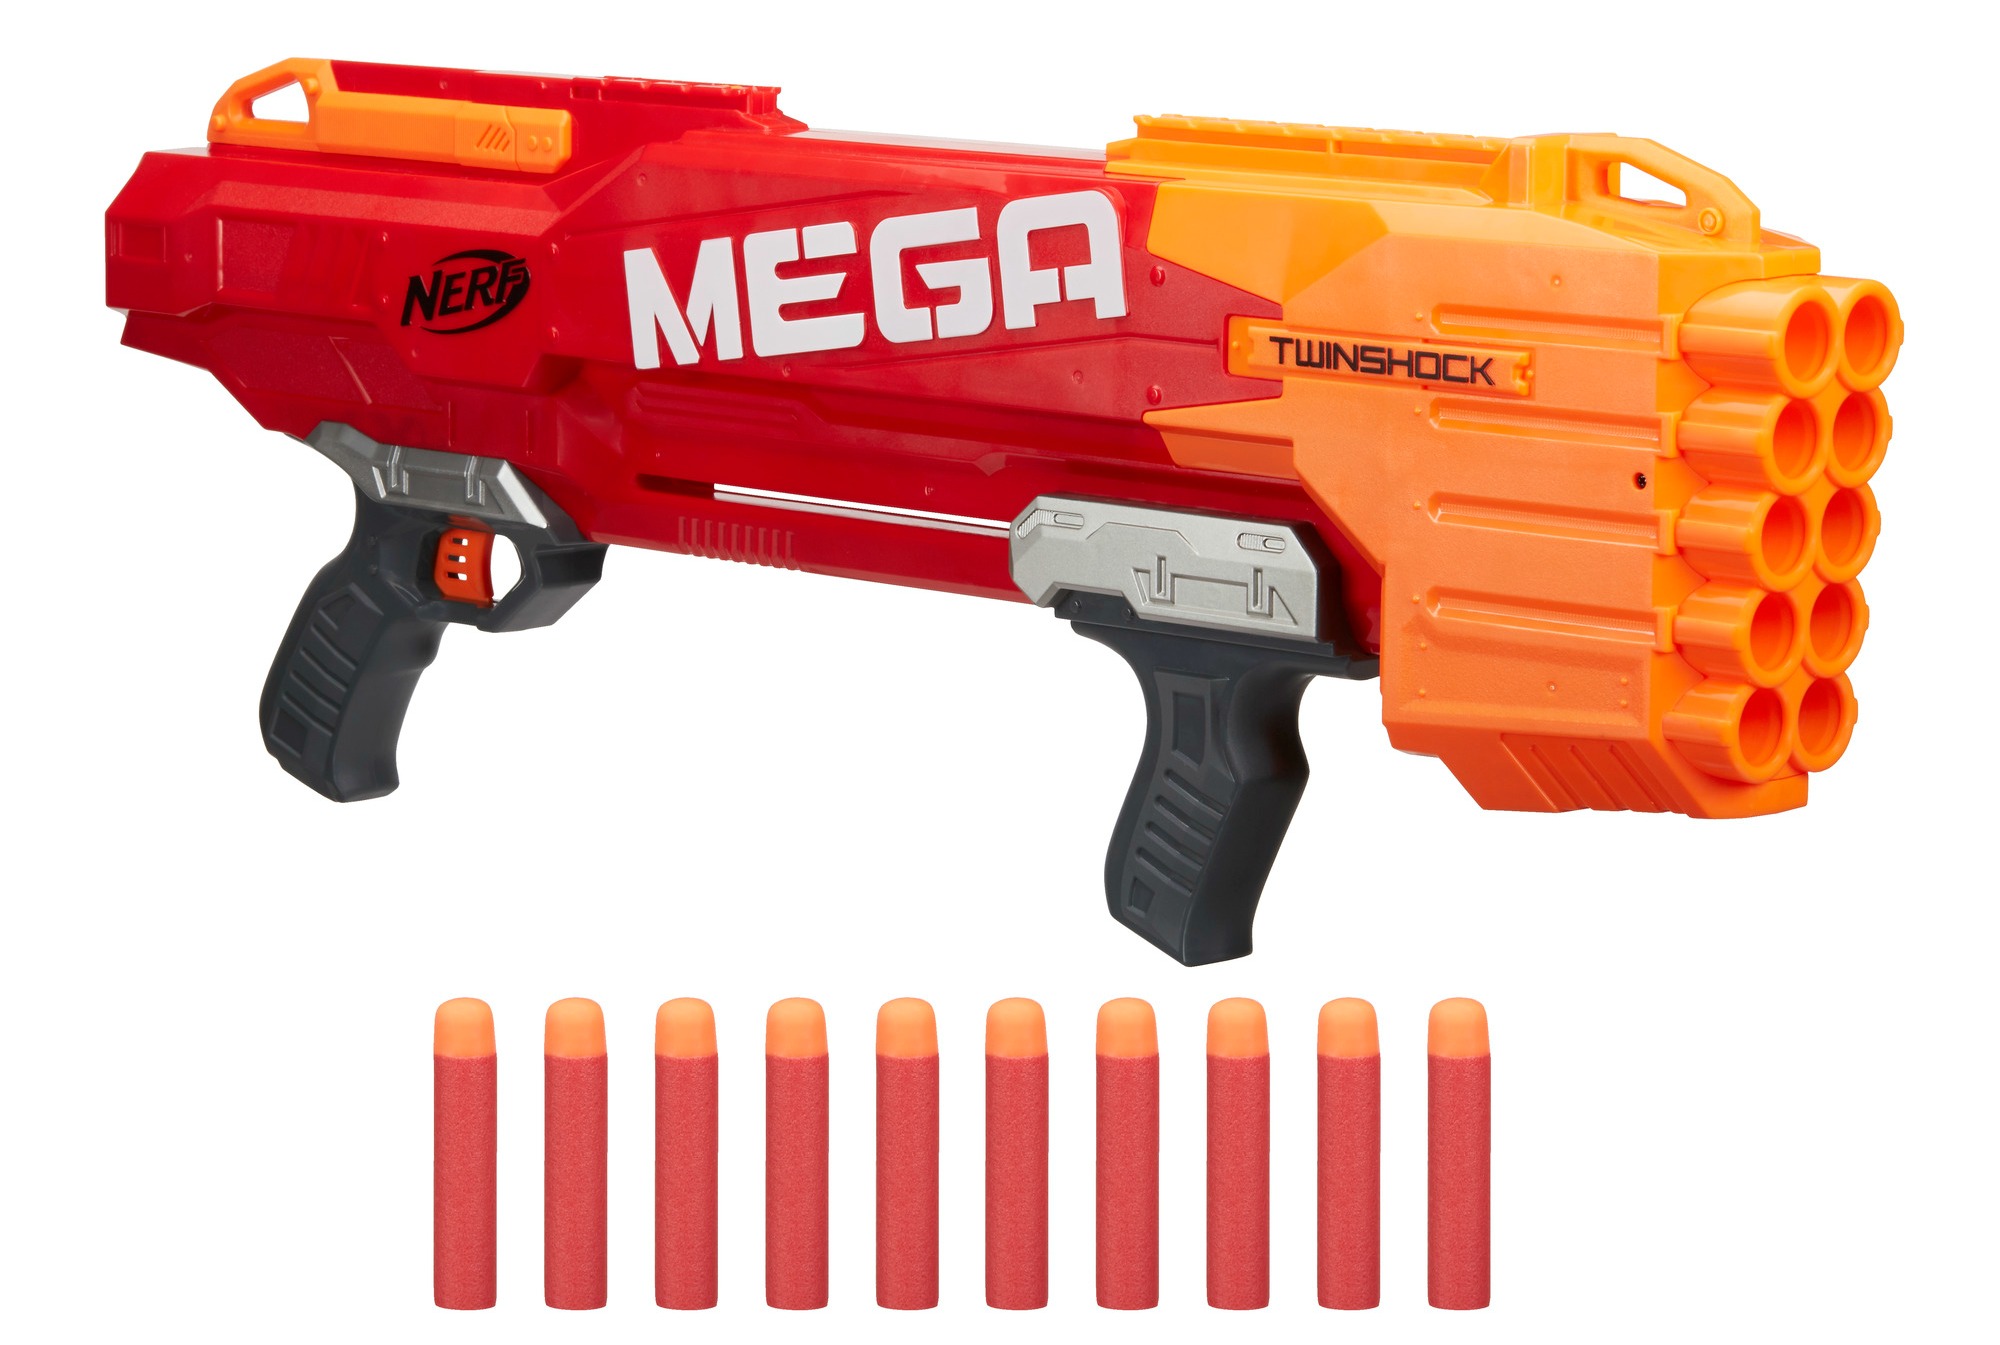 The Nerf N-Strike Mega Twinshock Blaster Makes a GREAT Gift - 2000 x 1345 jpeg 308kB